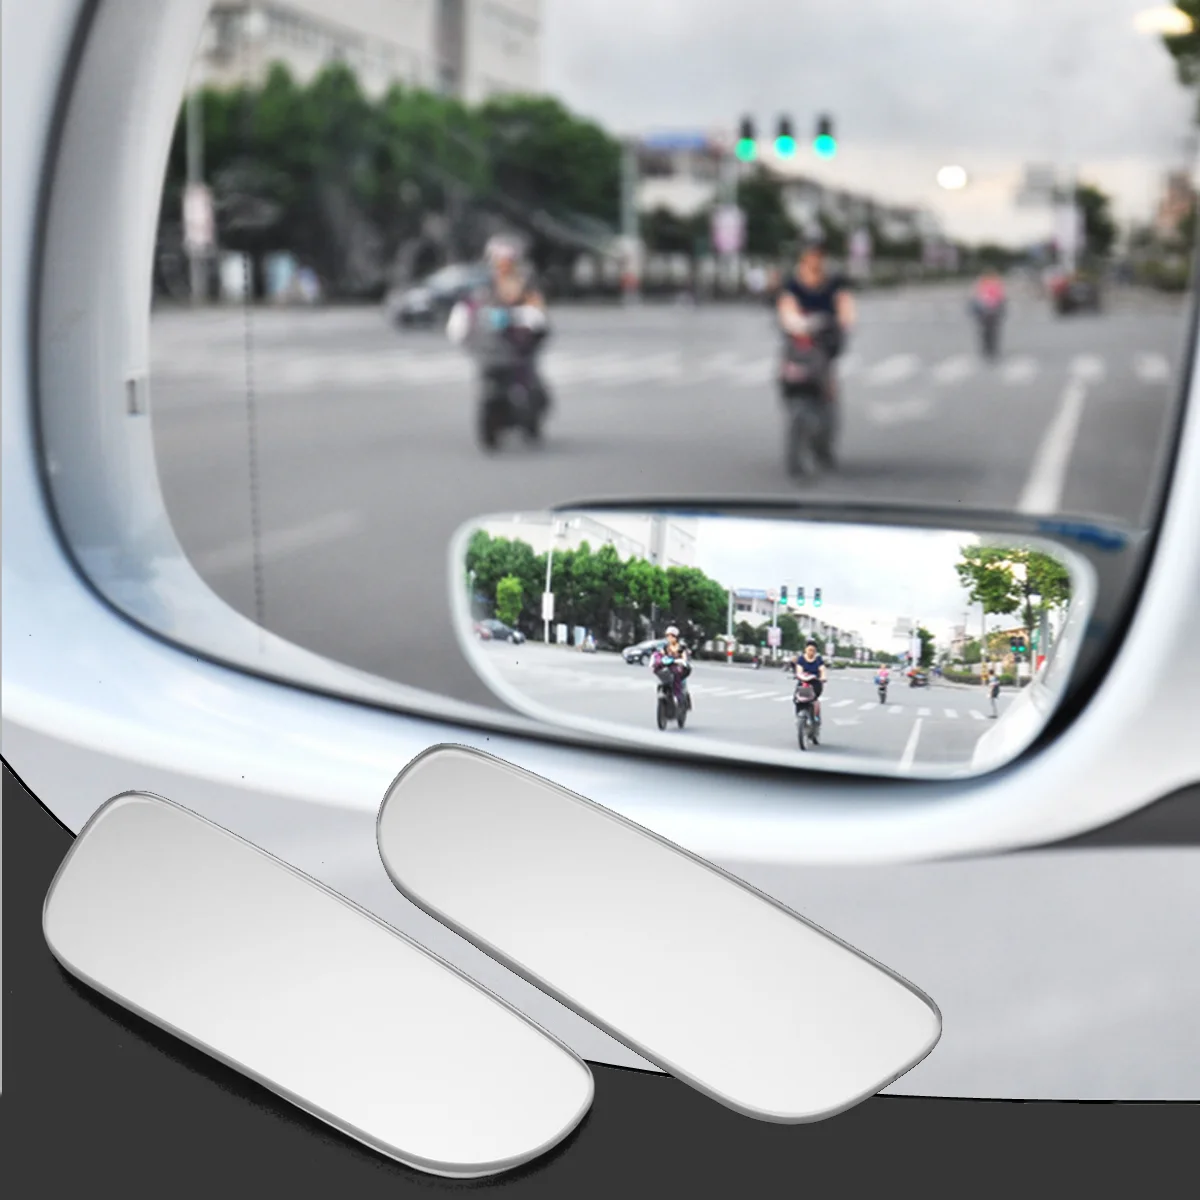 2 шт Универсальный Авто 360 широкий угол слепое пятно зеркало Широкий Угол Заднего вида автомобильное боковое зеркало регулируемый